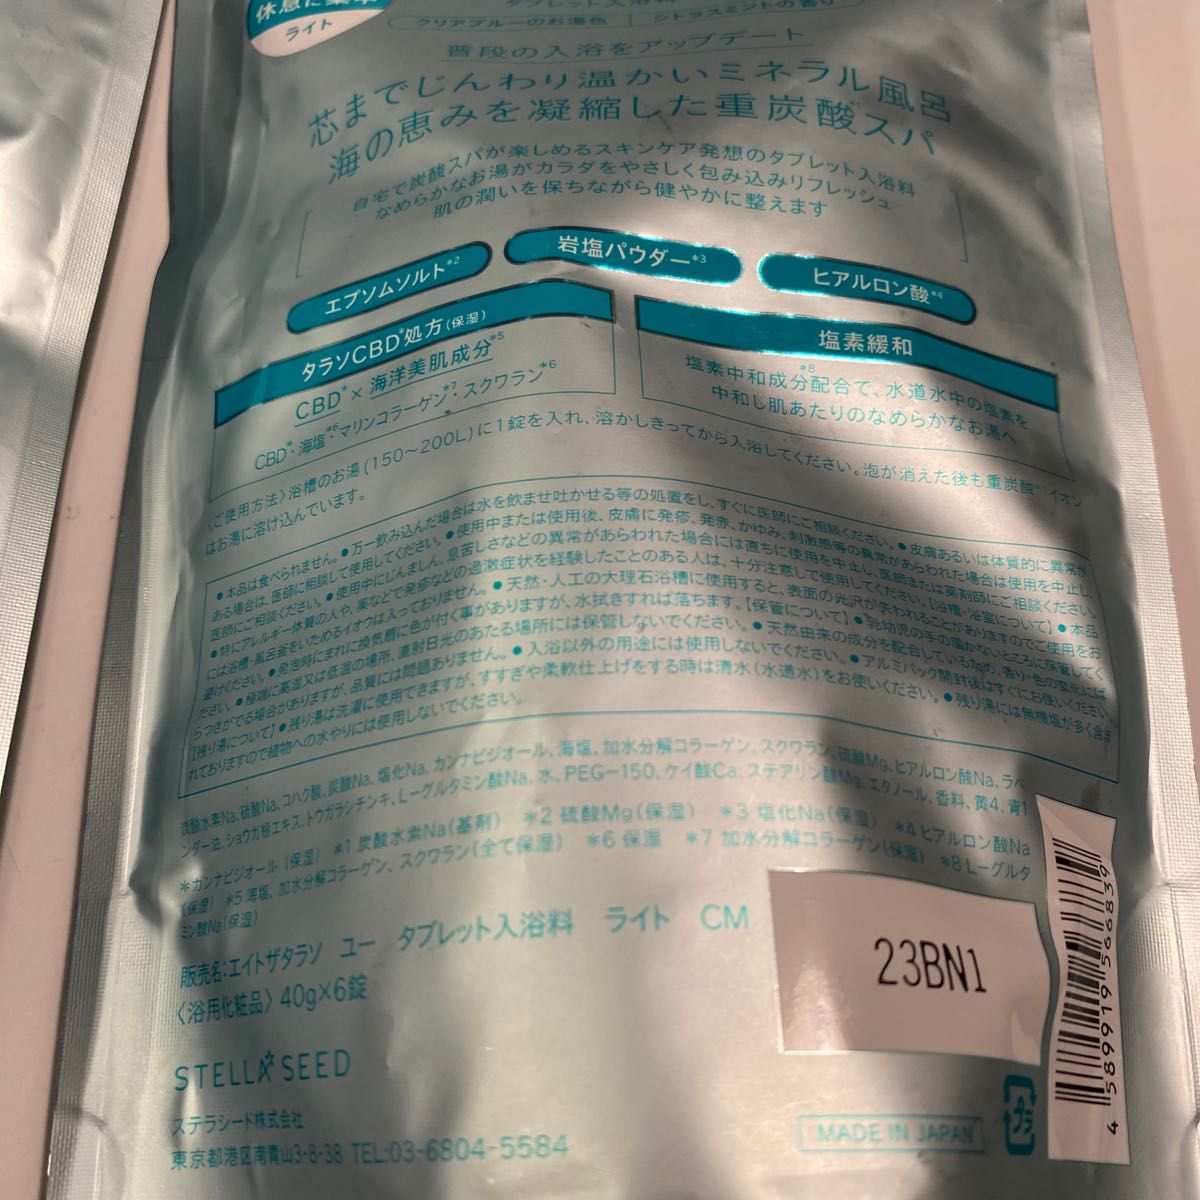 エイトザタラソユー バブルスパ タブレット入浴剤 ライト　シトラスミント 2袋